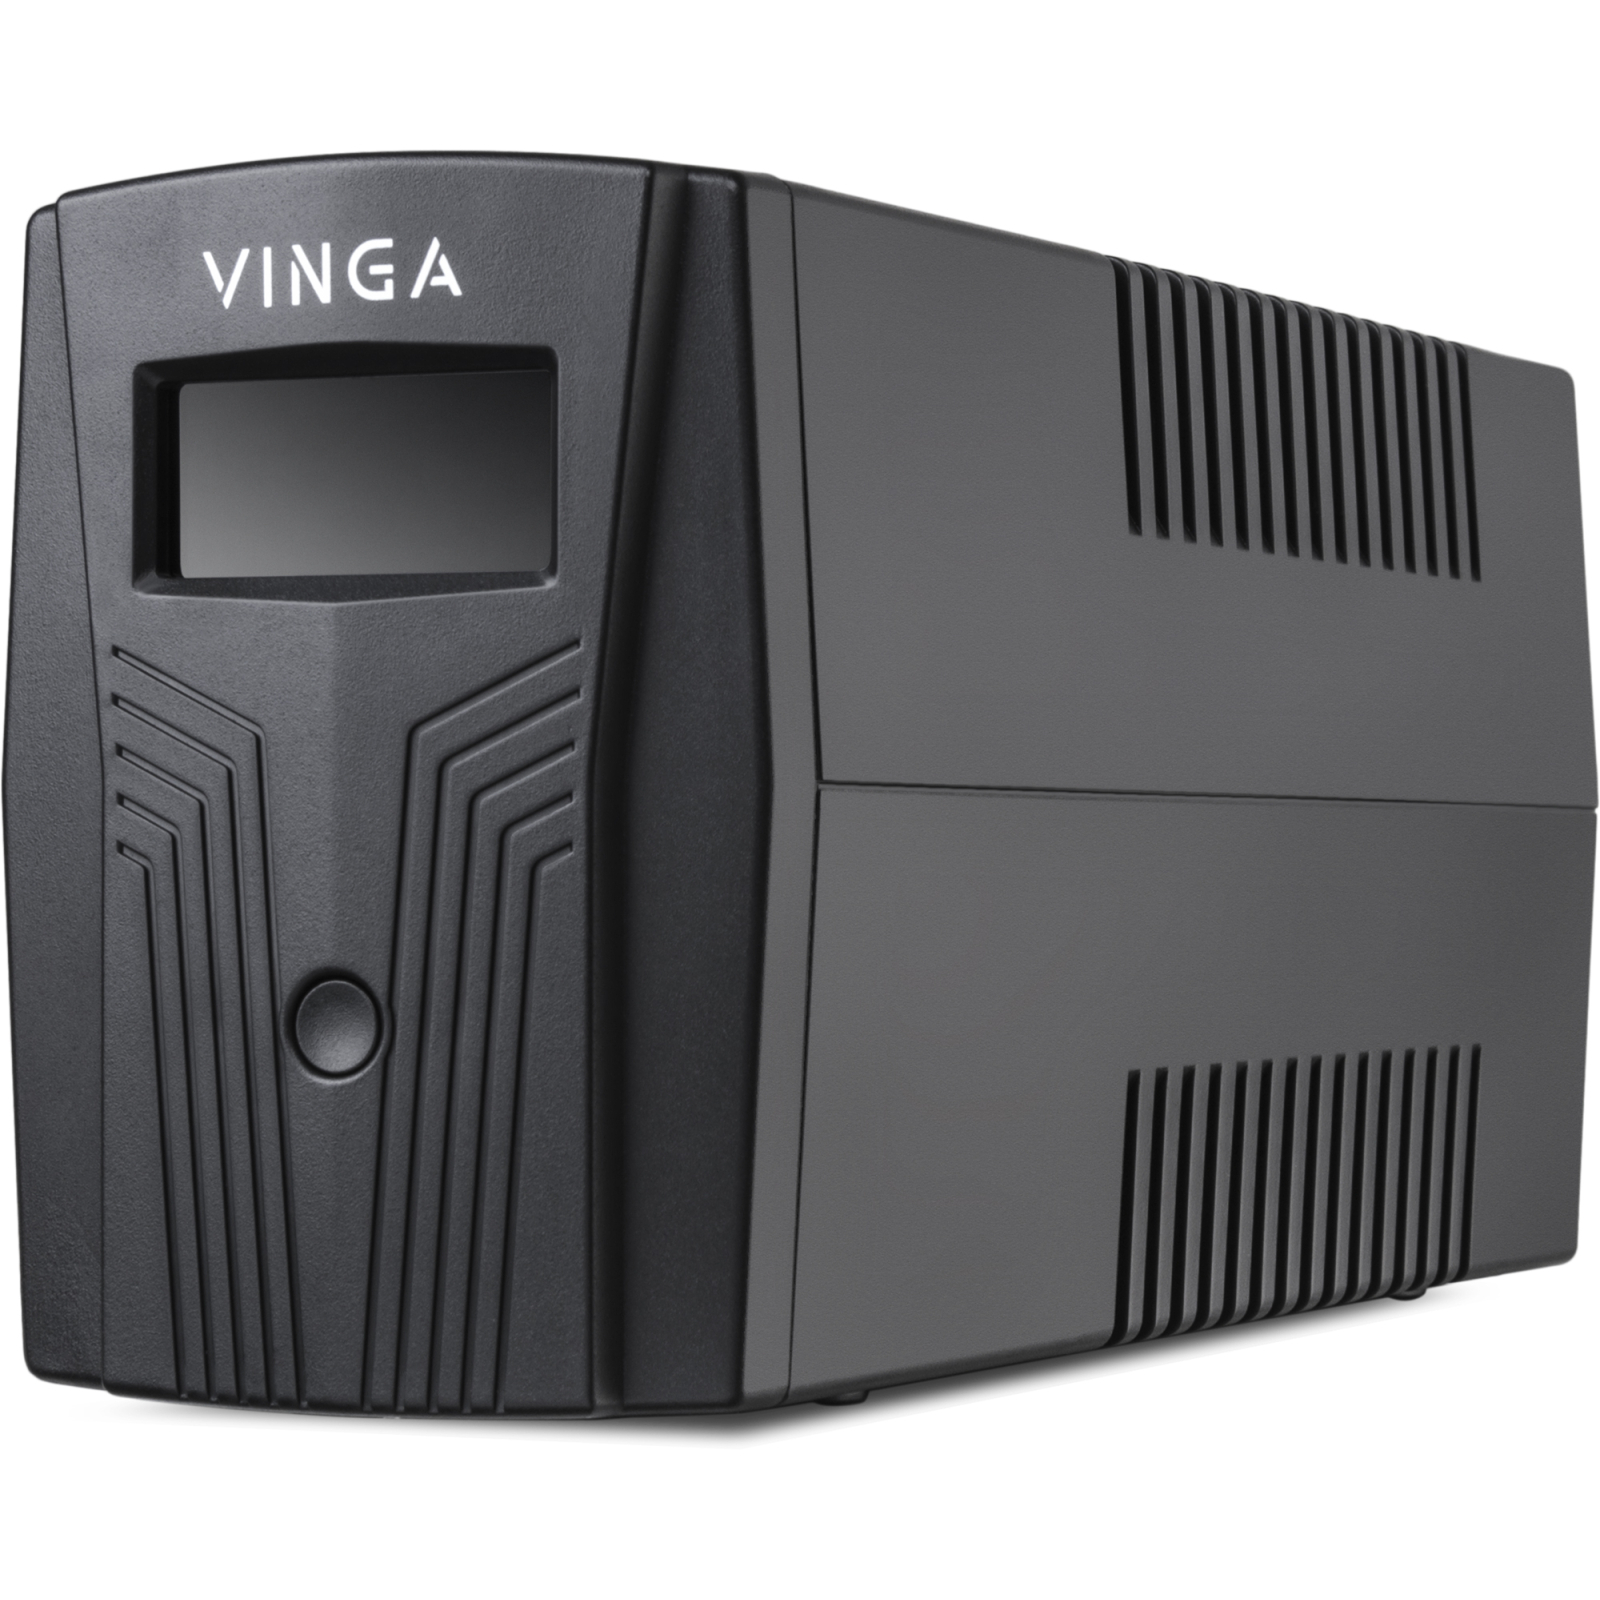 Источник бесперебойного питания Vinga LCD 1500VA plastic case (VPC-1500P) изображение 4